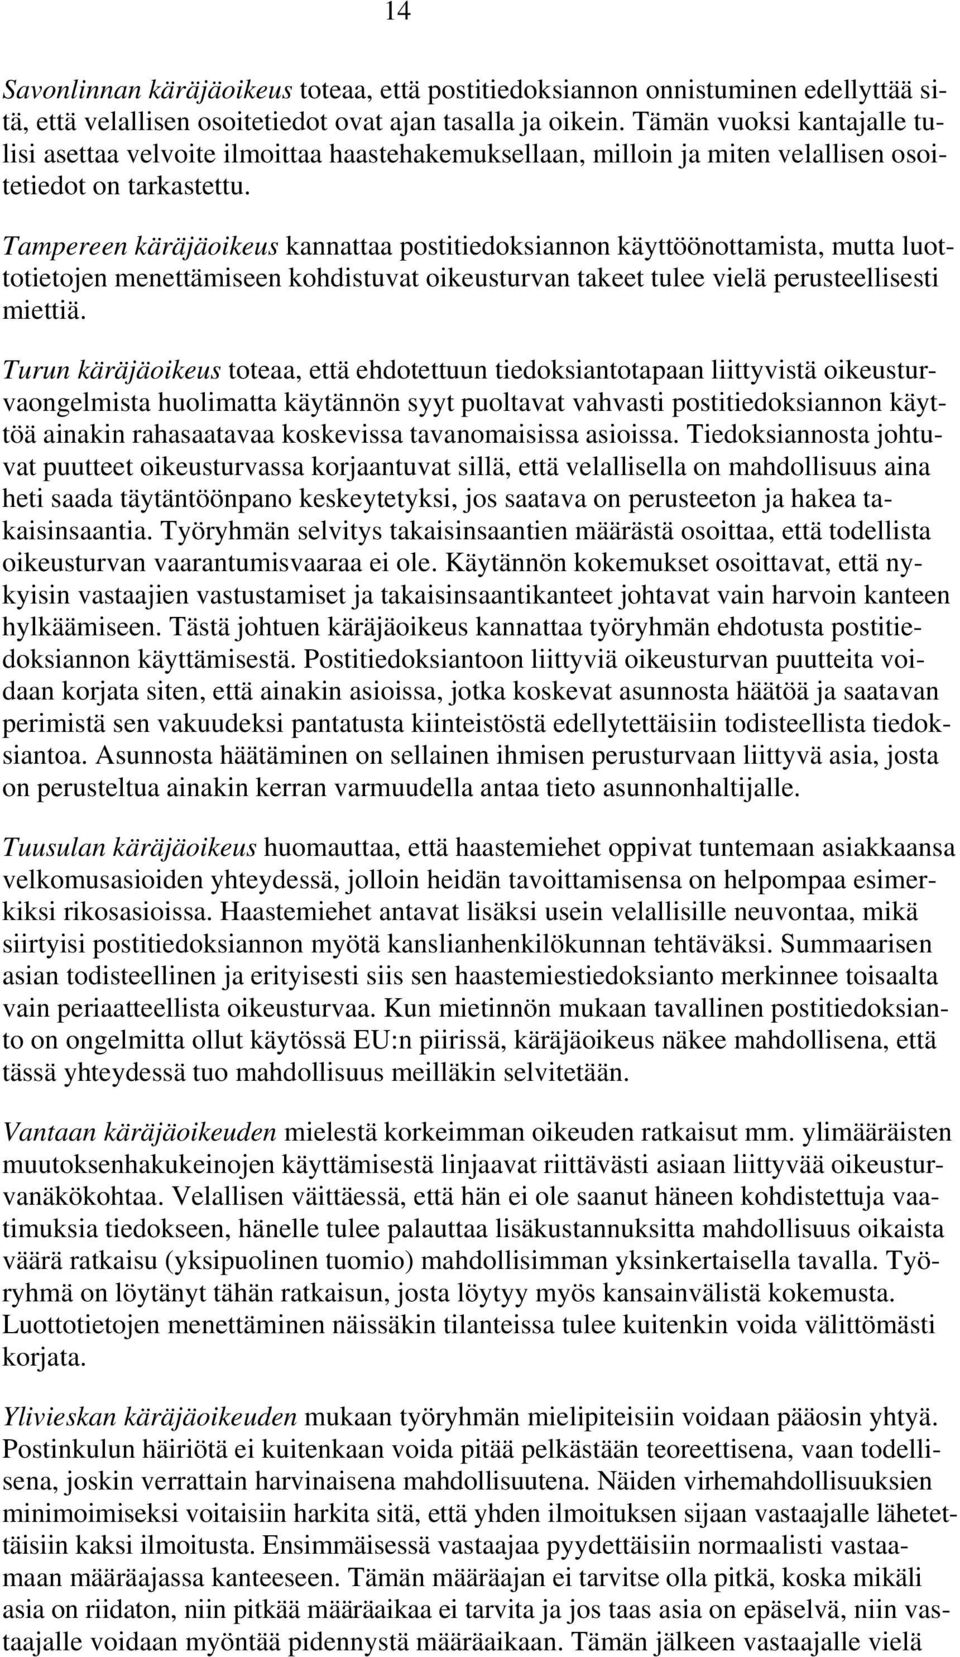 Tampereen käräjäoikeus kannattaa postitiedoksiannon käyttöönottamista, mutta luottotietojen menettämiseen kohdistuvat oikeusturvan takeet tulee vielä perusteellisesti miettiä.